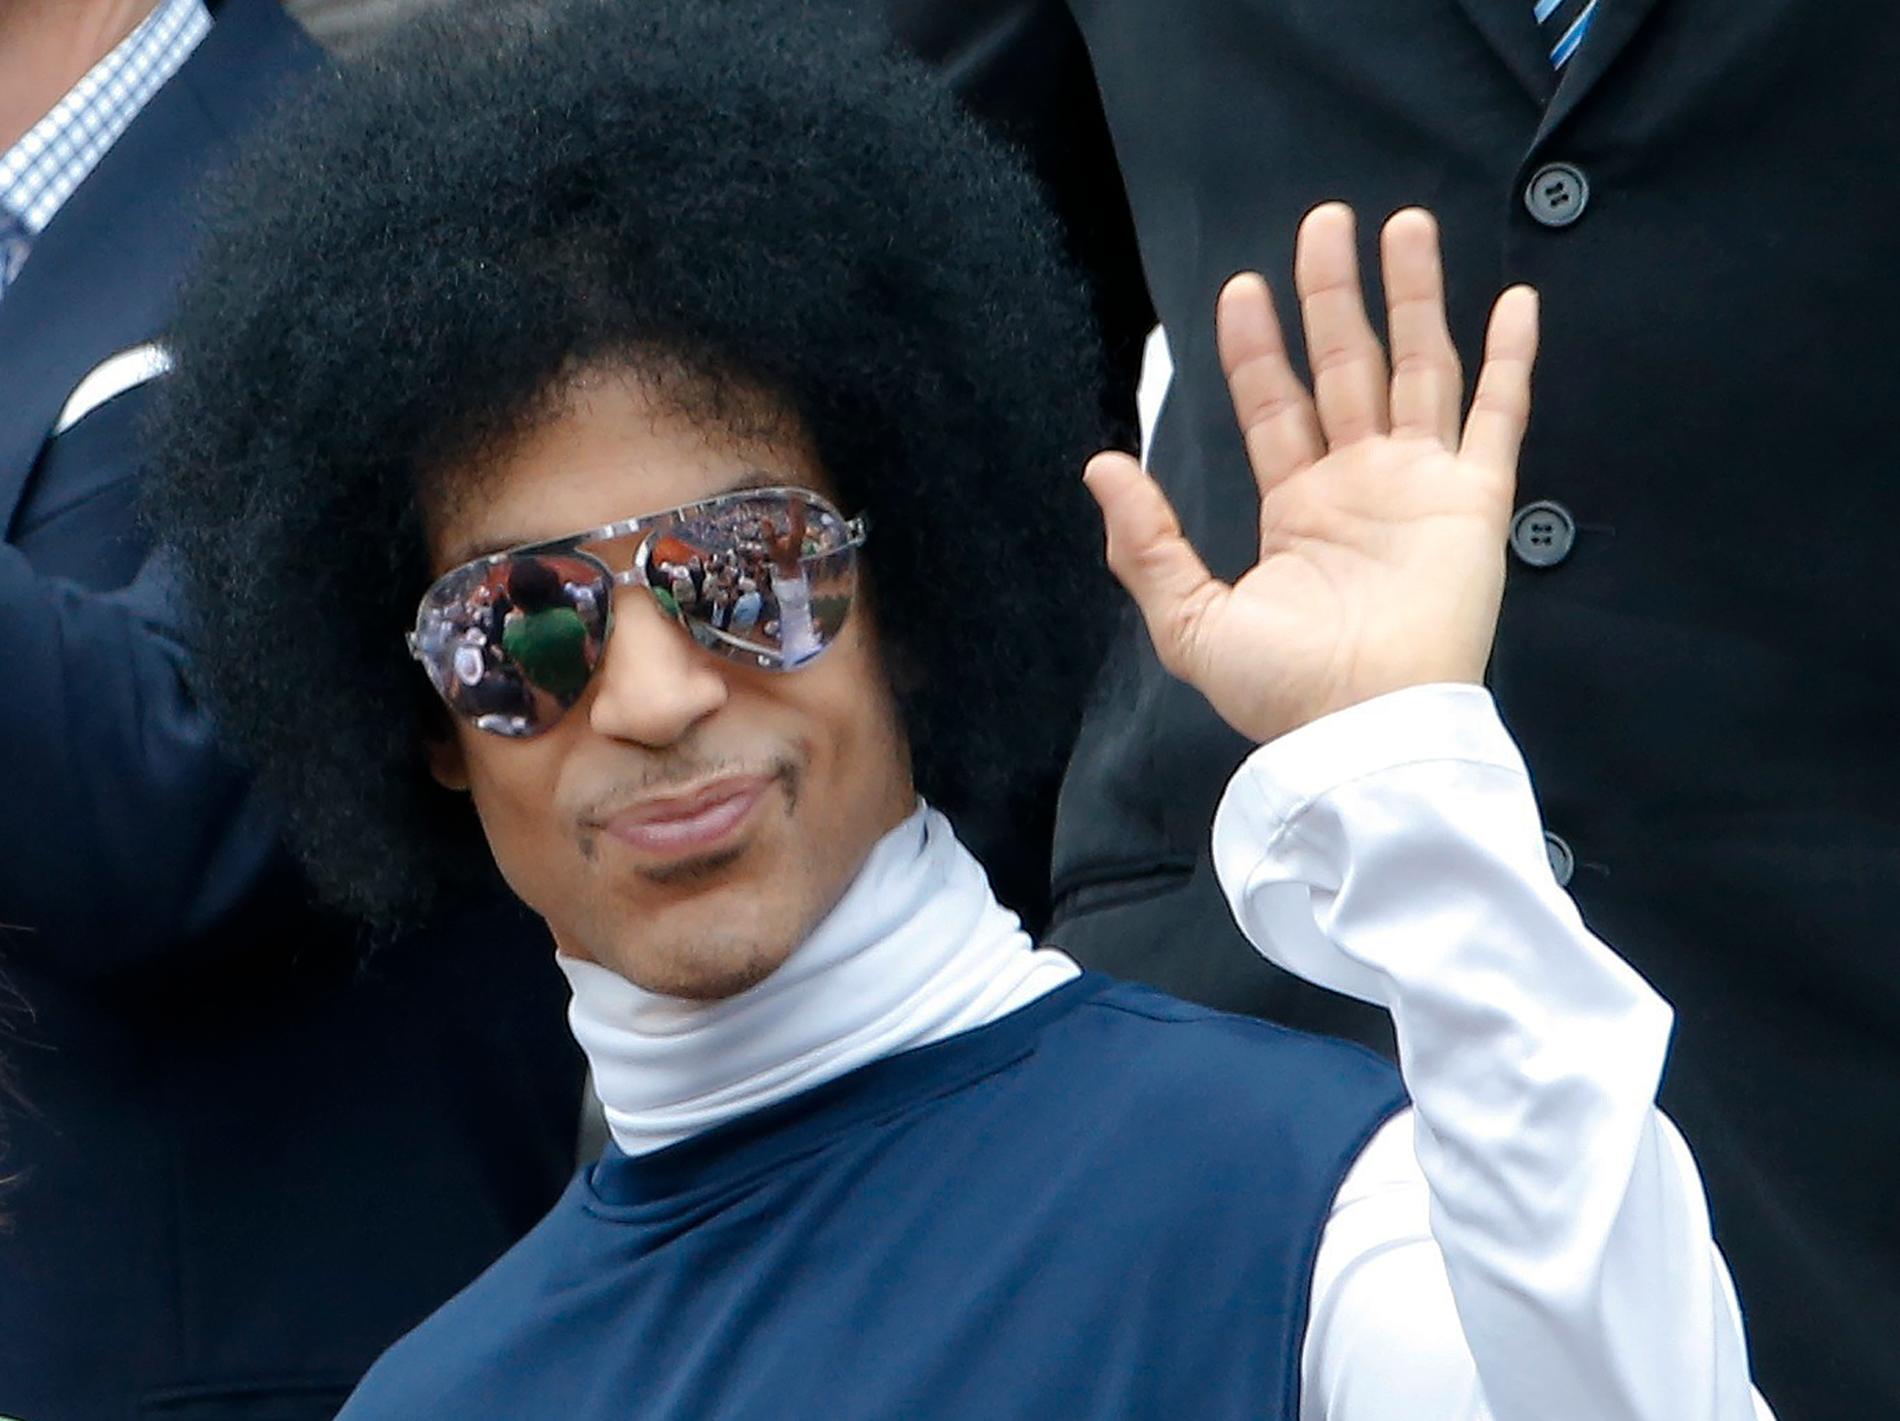 Prince kollar tennis på roland garros i Paris 2014